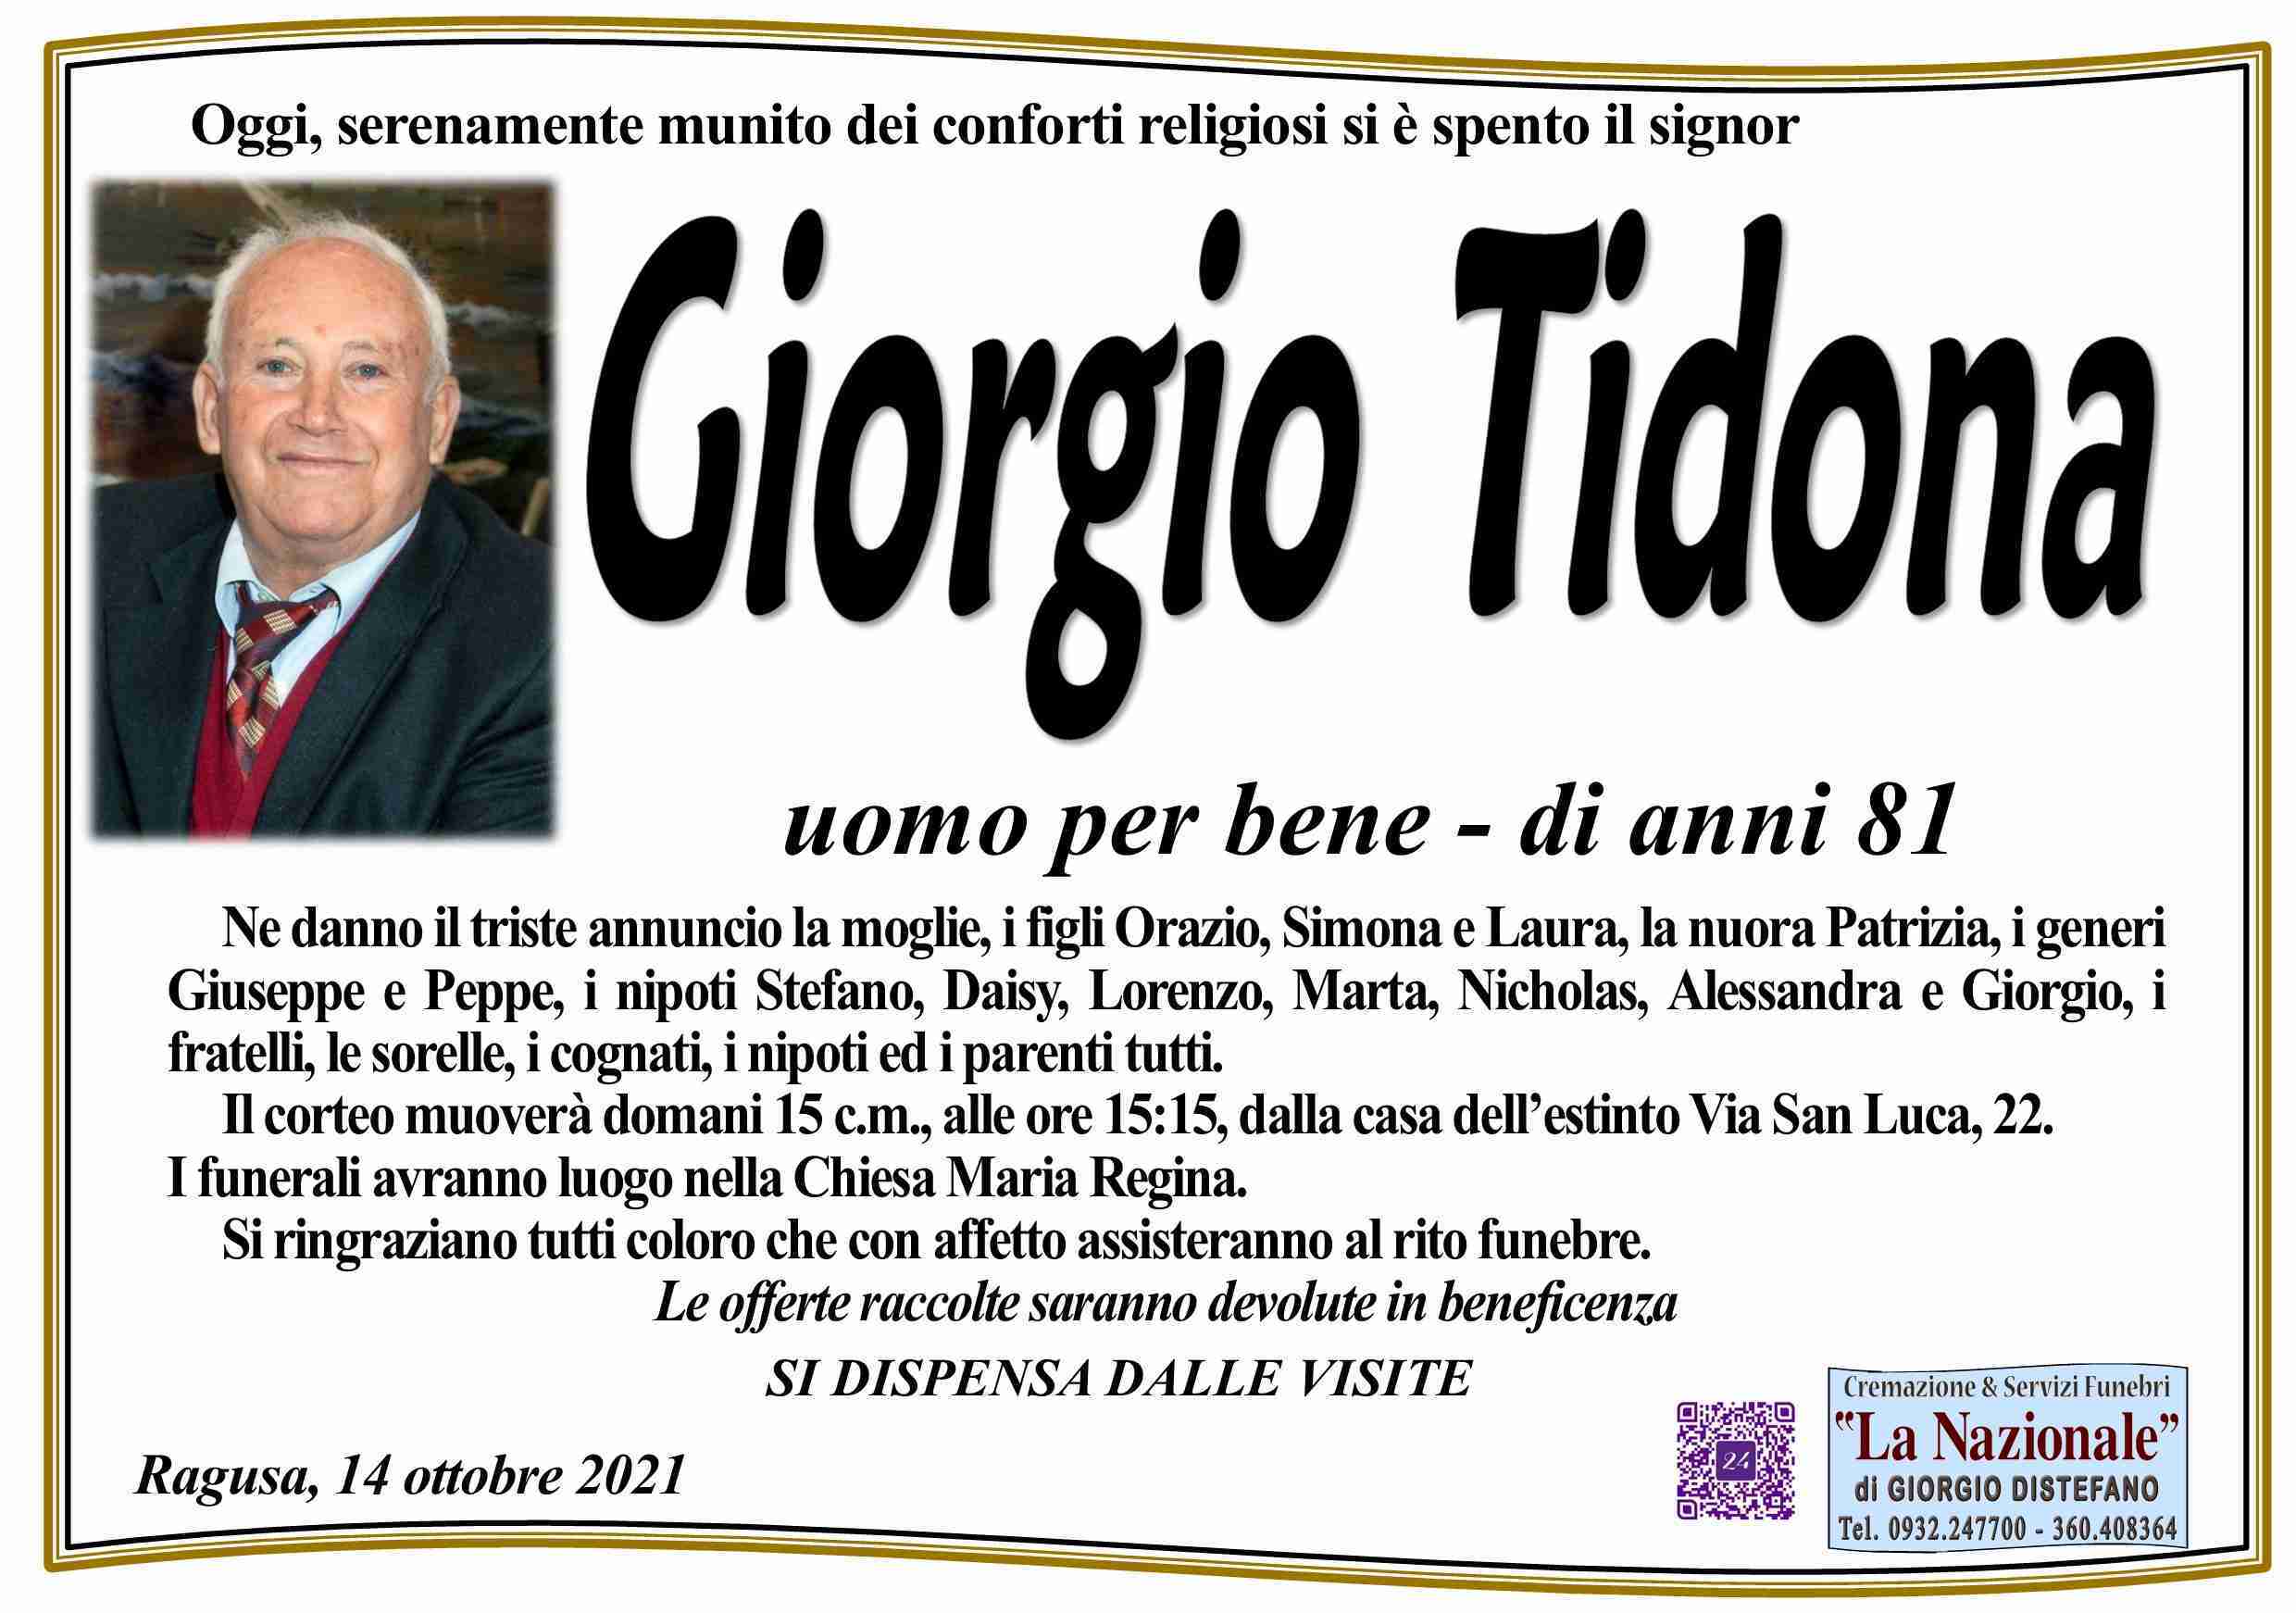 Giorgio Tidona